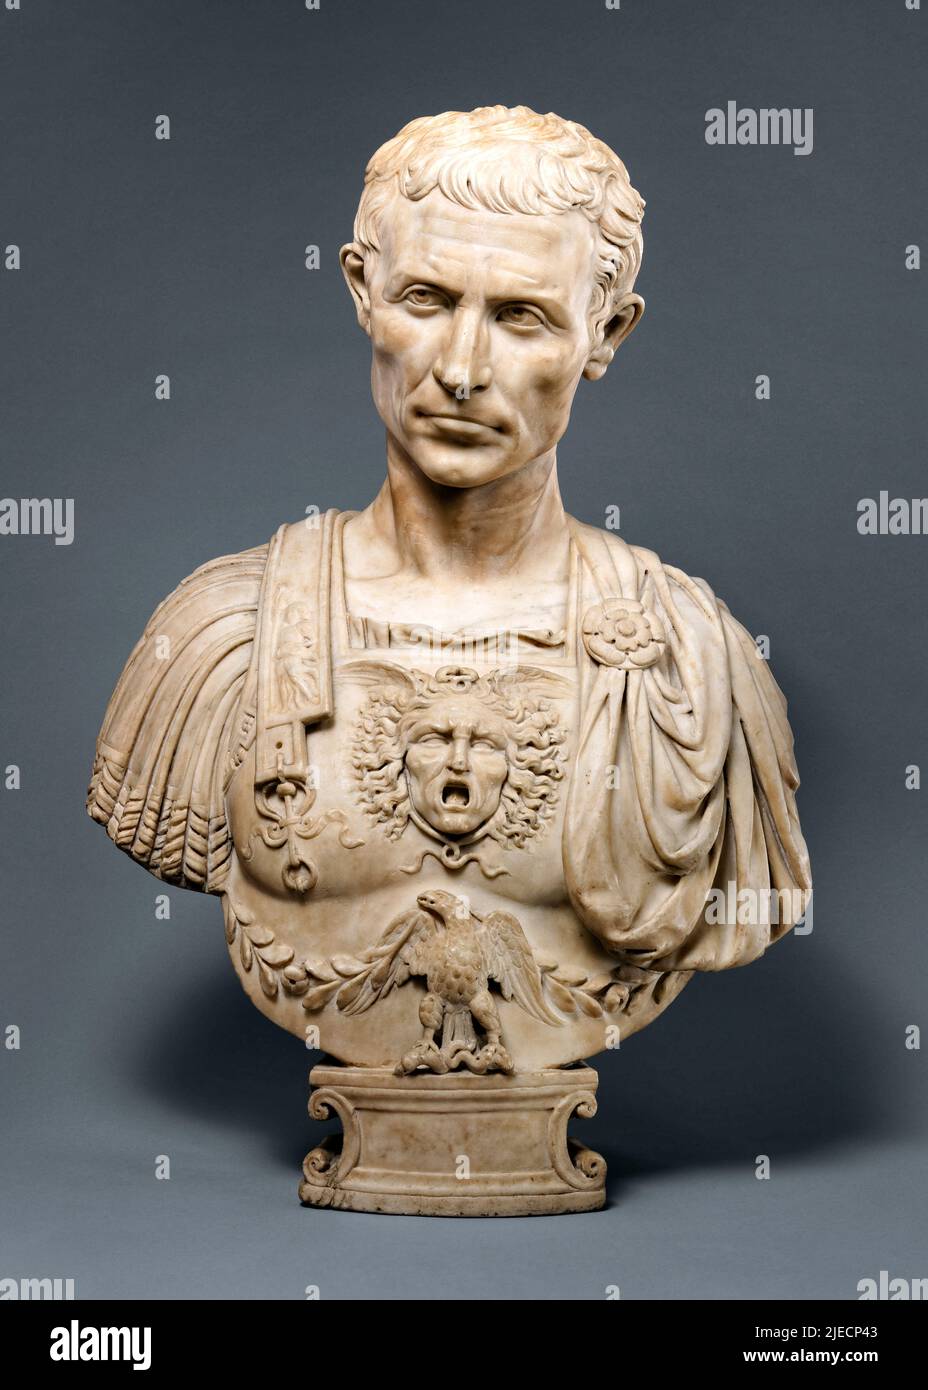 Julius Caesar (100-44BC) römischer General und Staatsmann; Marmorbüste des italienischen Bildhauers Andrea Ferrucci (1465-1526) geschnitzt um 1512-14. Stockfoto